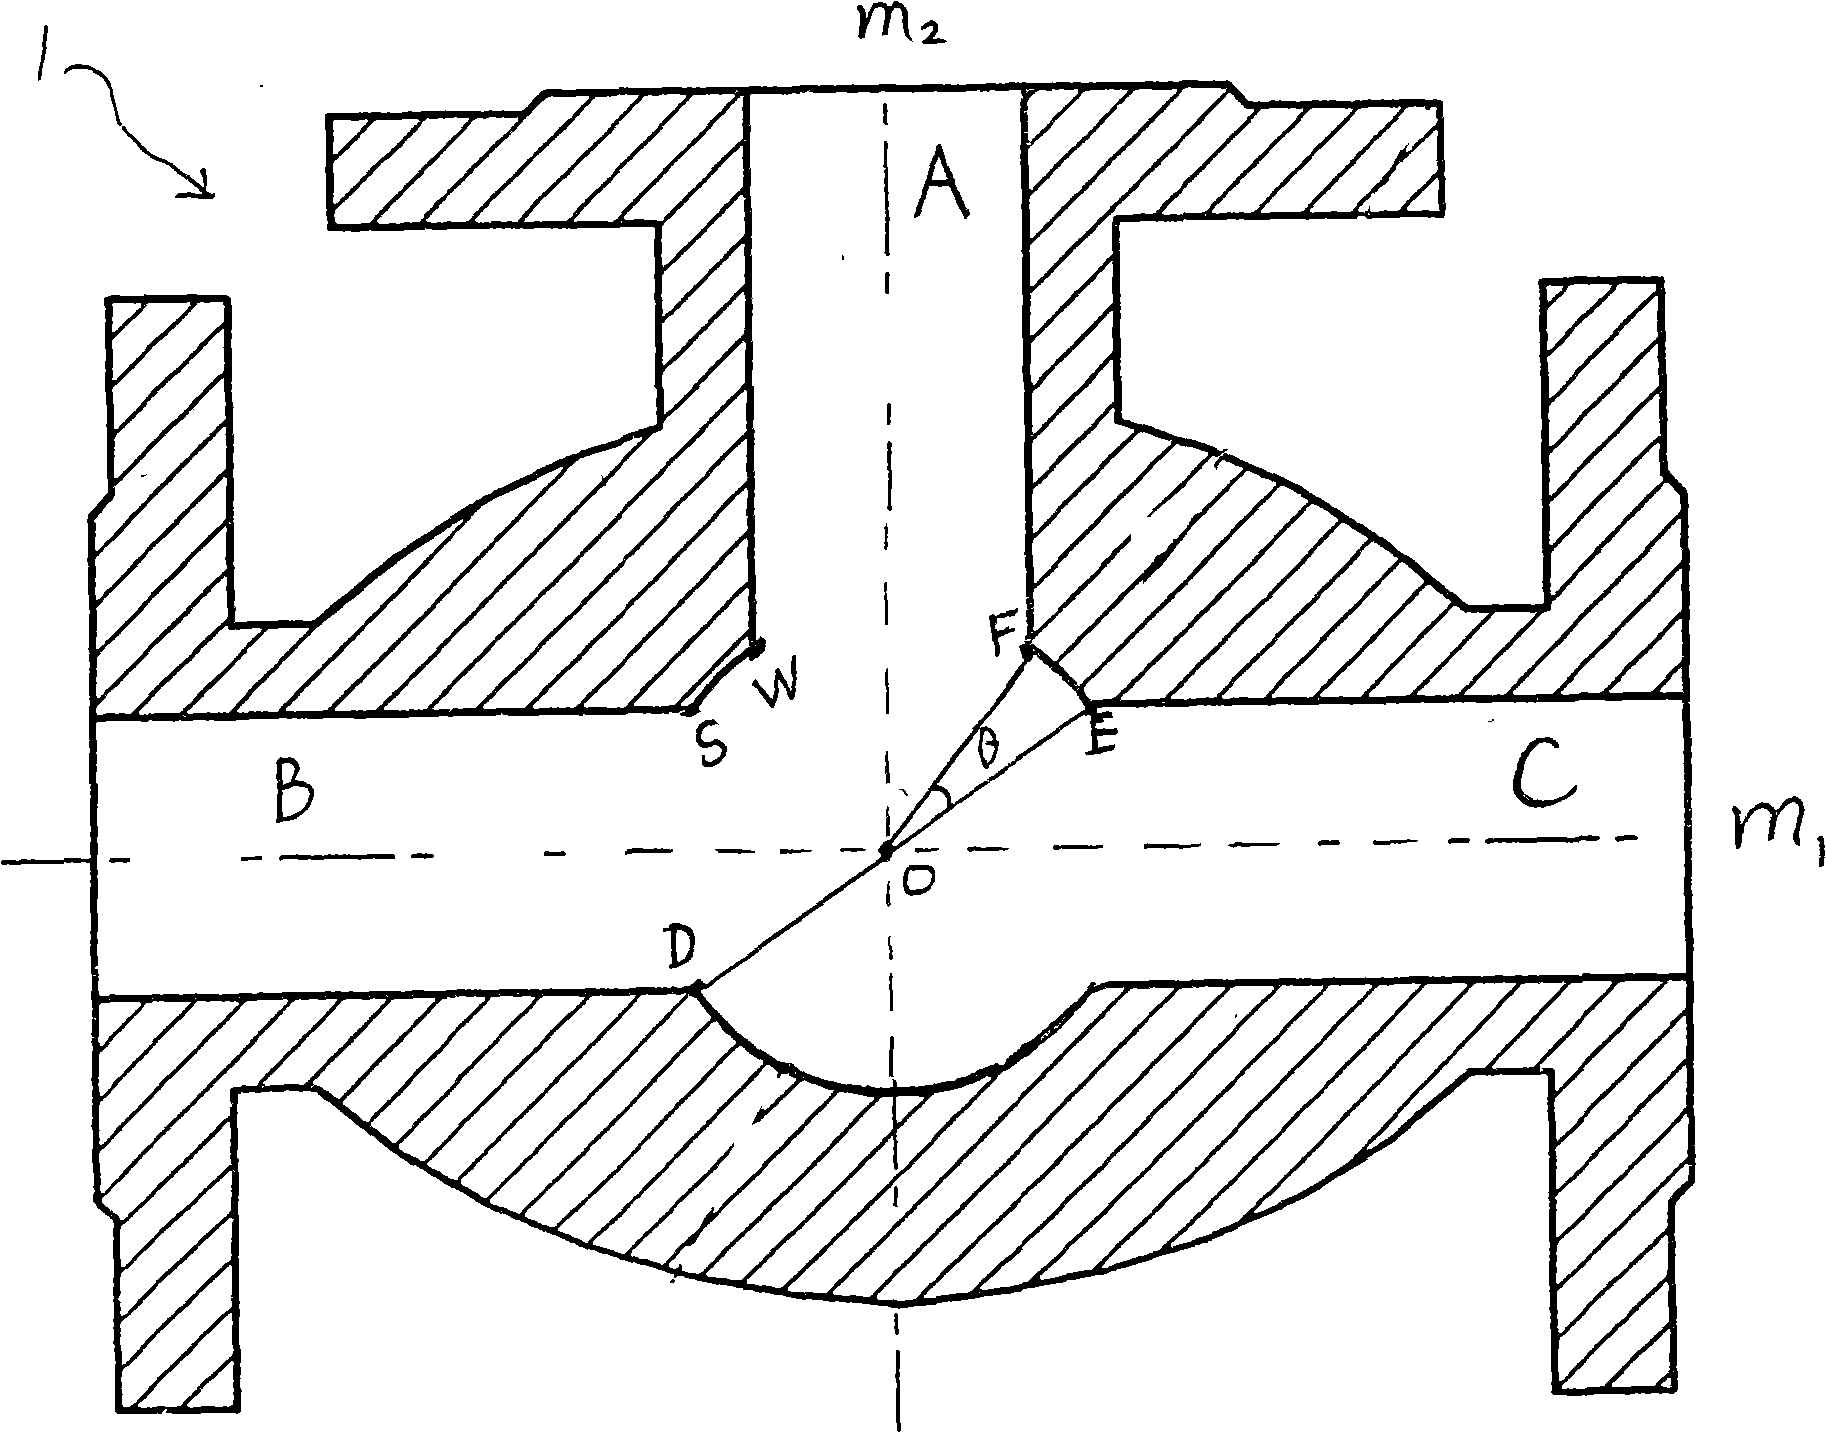 Three-way ball valve